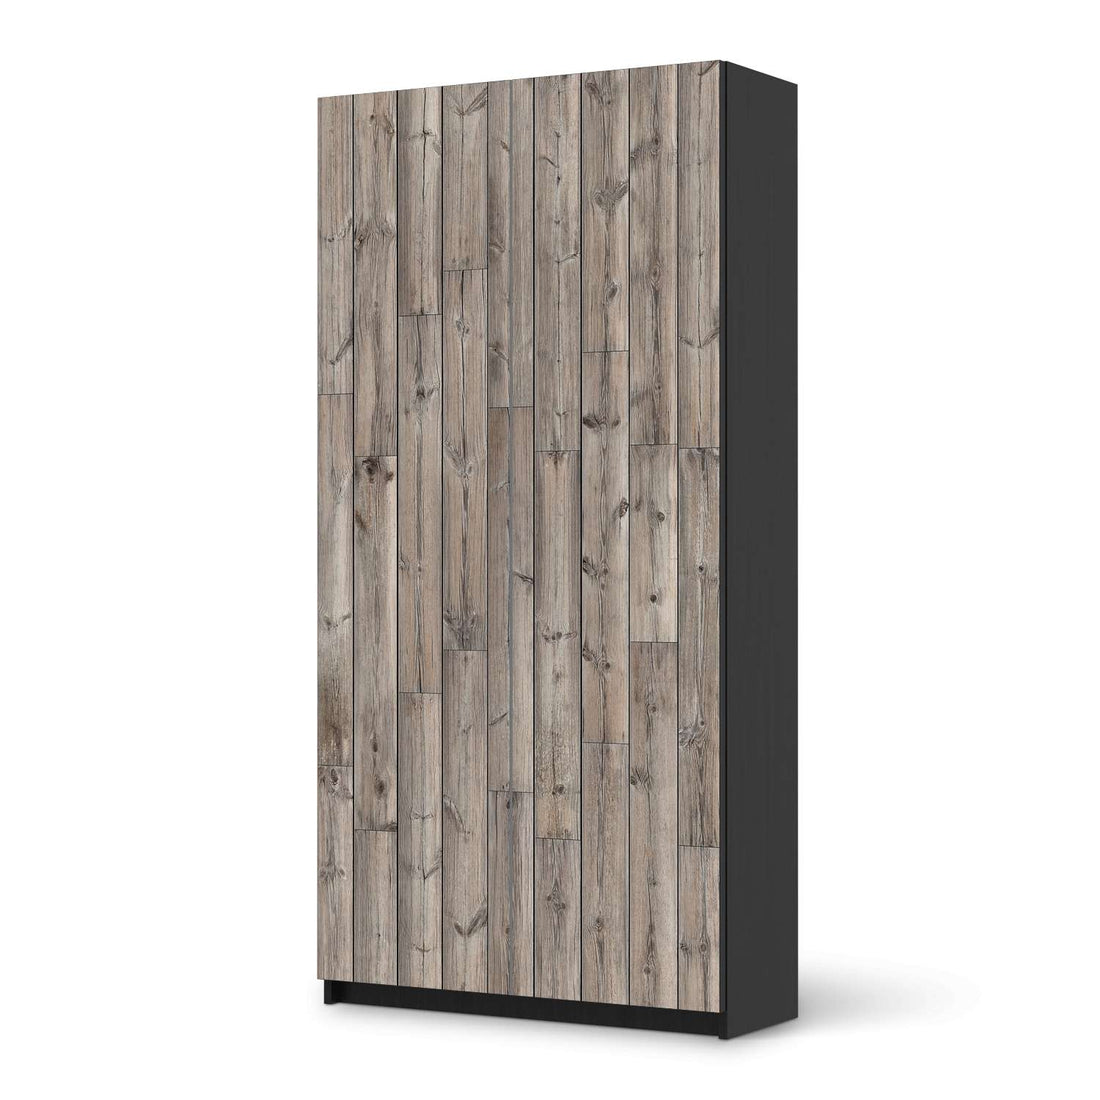 Klebefolie für Möbel Dark washed - IKEA Pax Schrank 201 cm Höhe - 2 Türen - schwarz